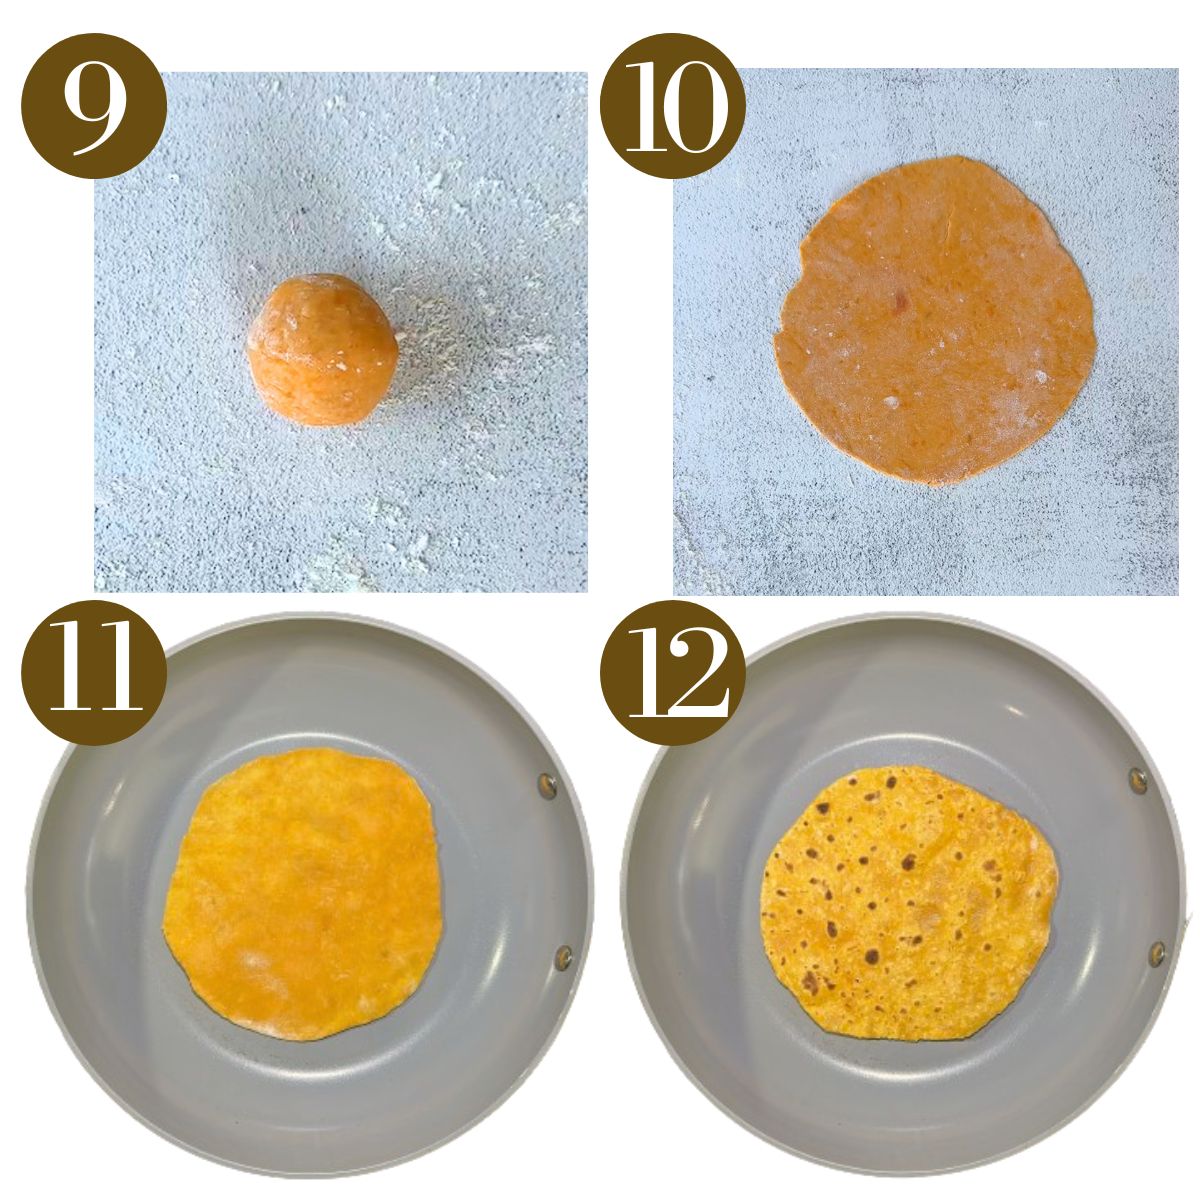 Steps to make sweet potato tortillas.